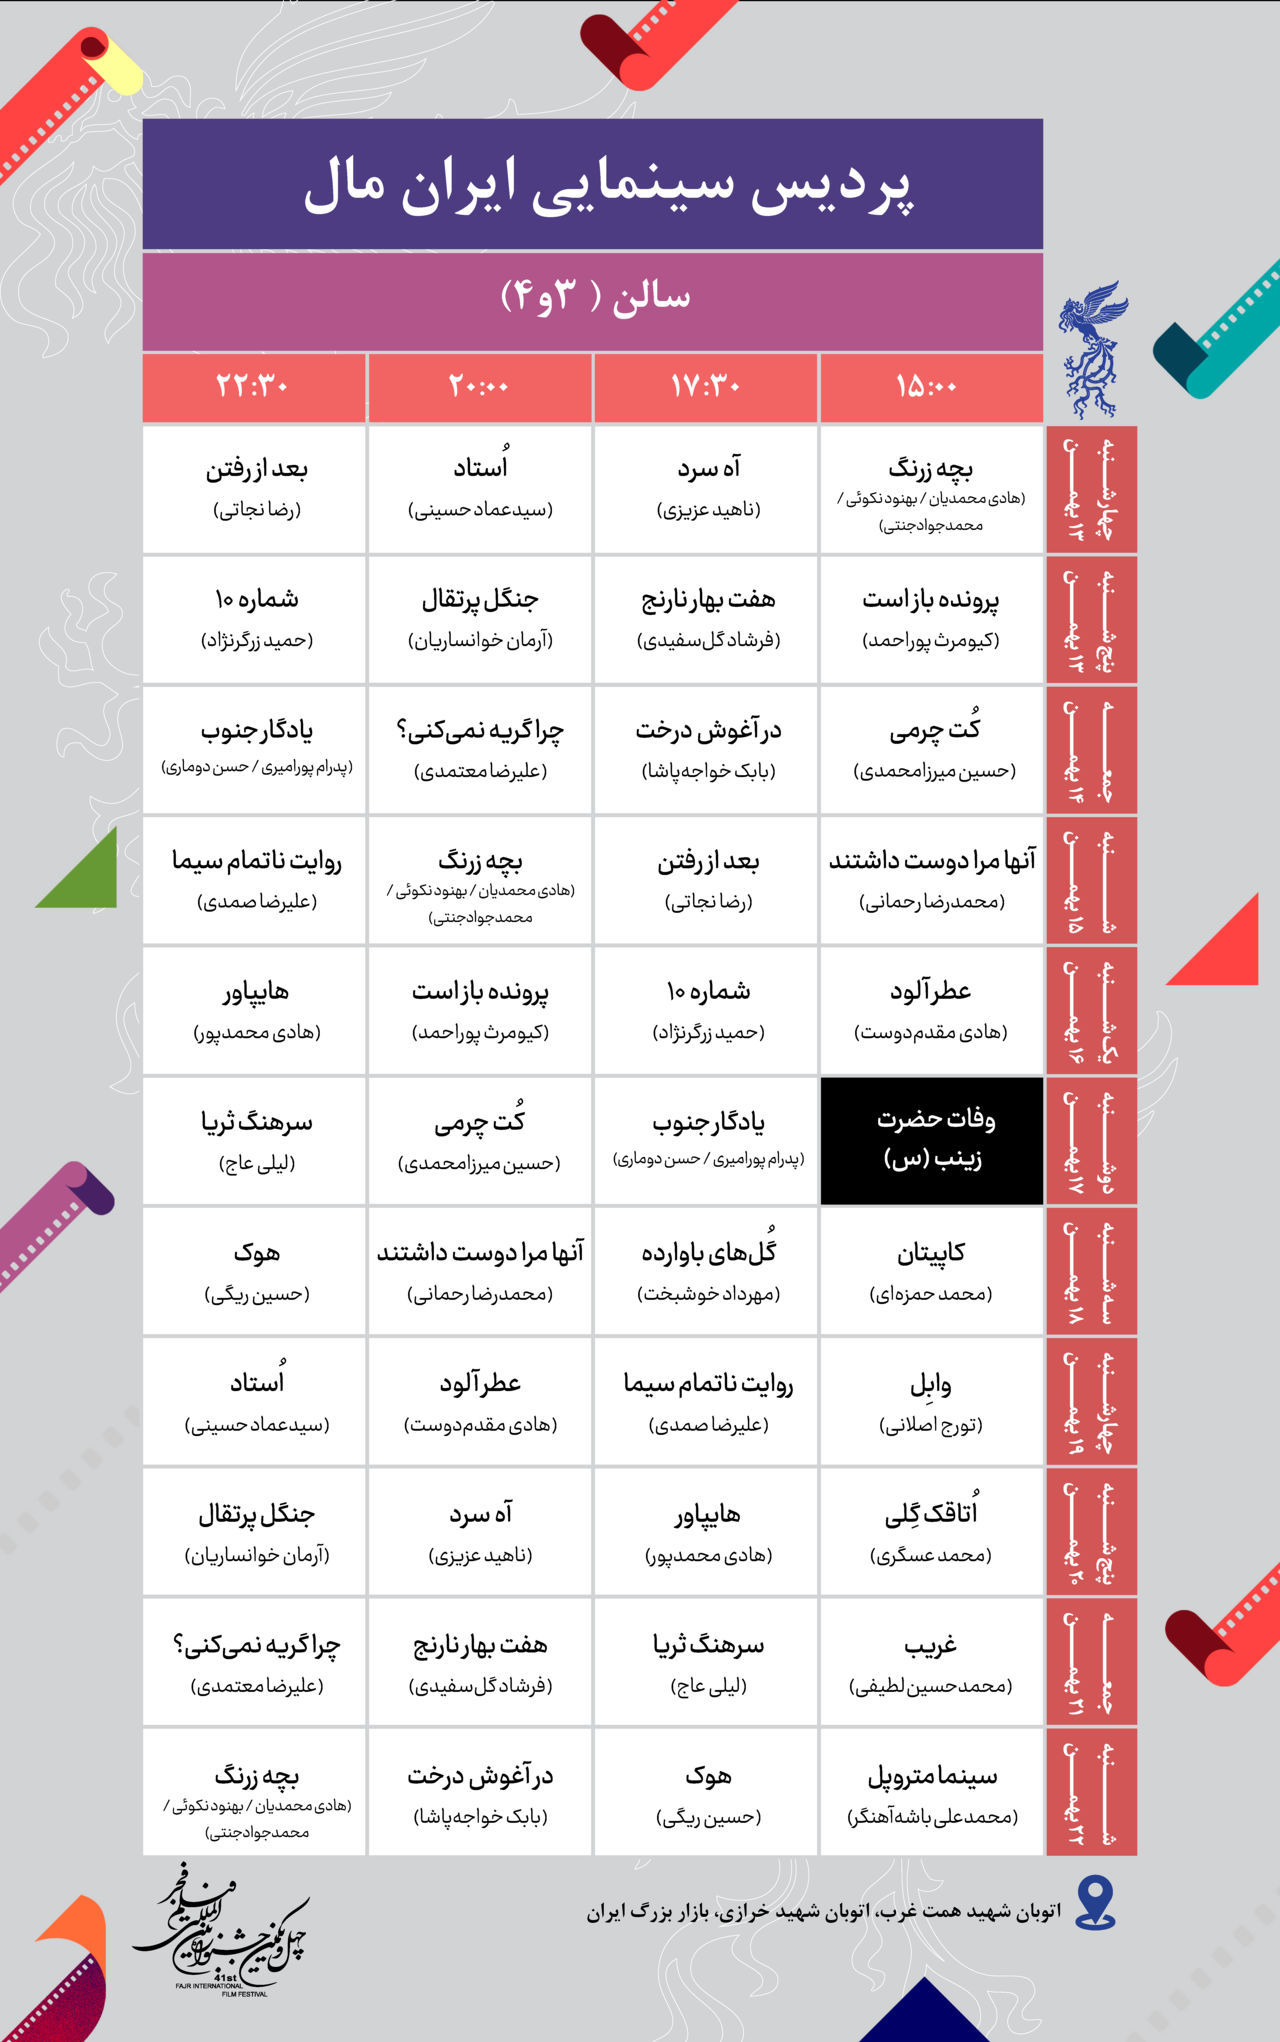 جدول پخش فیلم های جشنواره در ایران مال